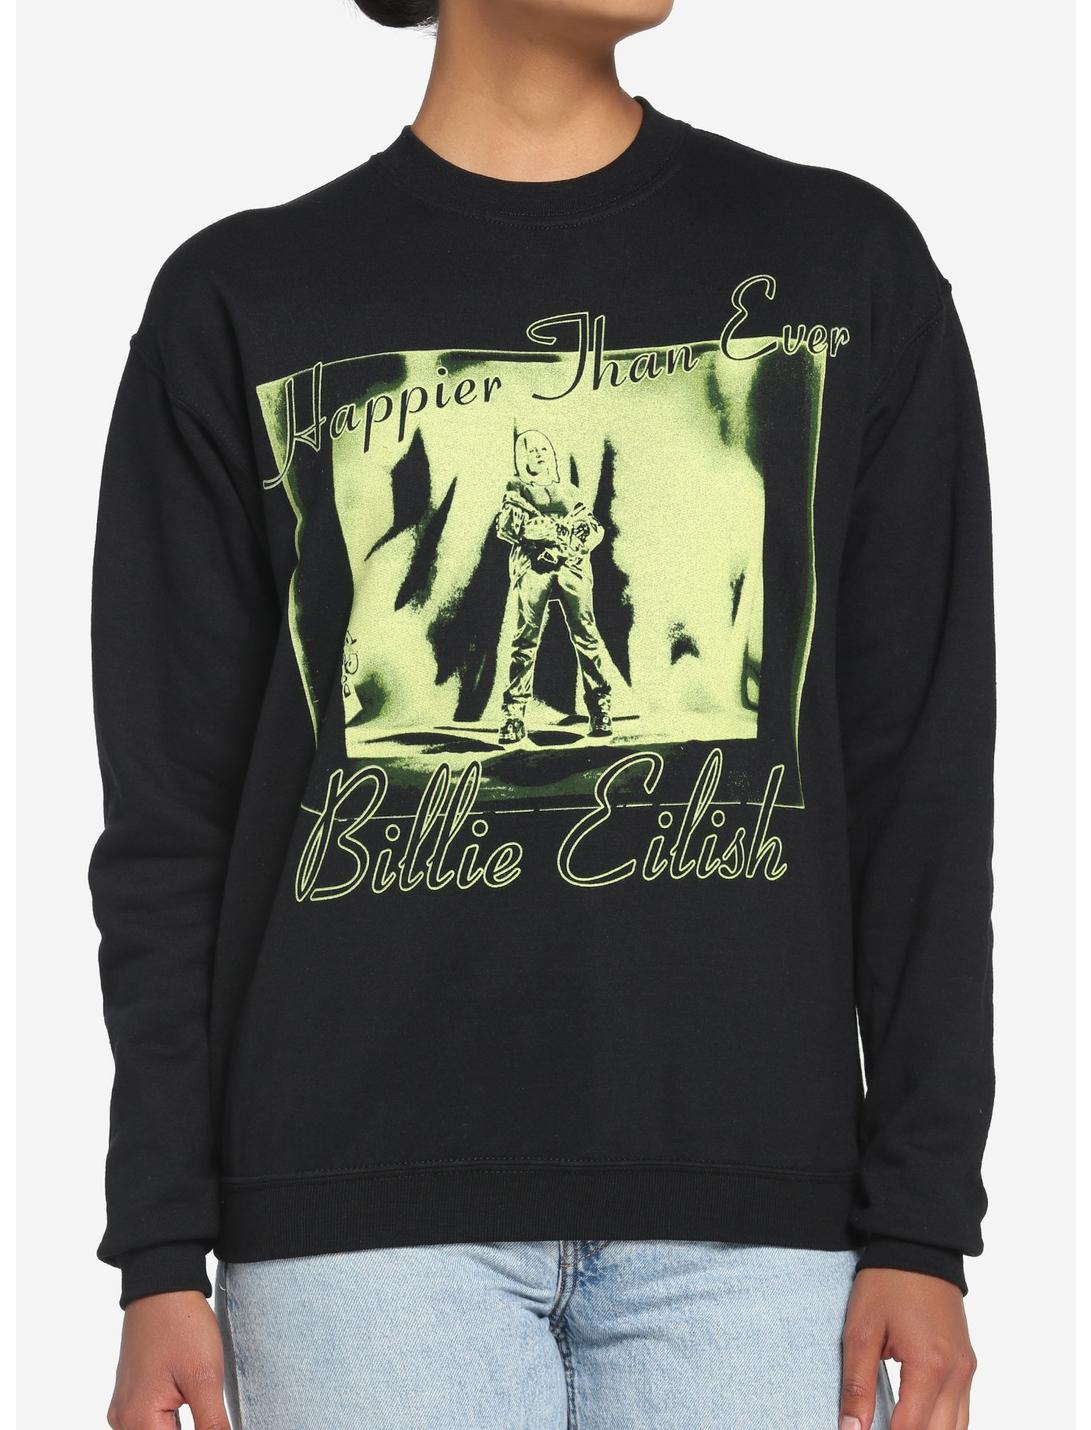 Billie Eilish Happier Than Ever Boyfriend Fit Girls Sweatshirt, BLACK, hi-res